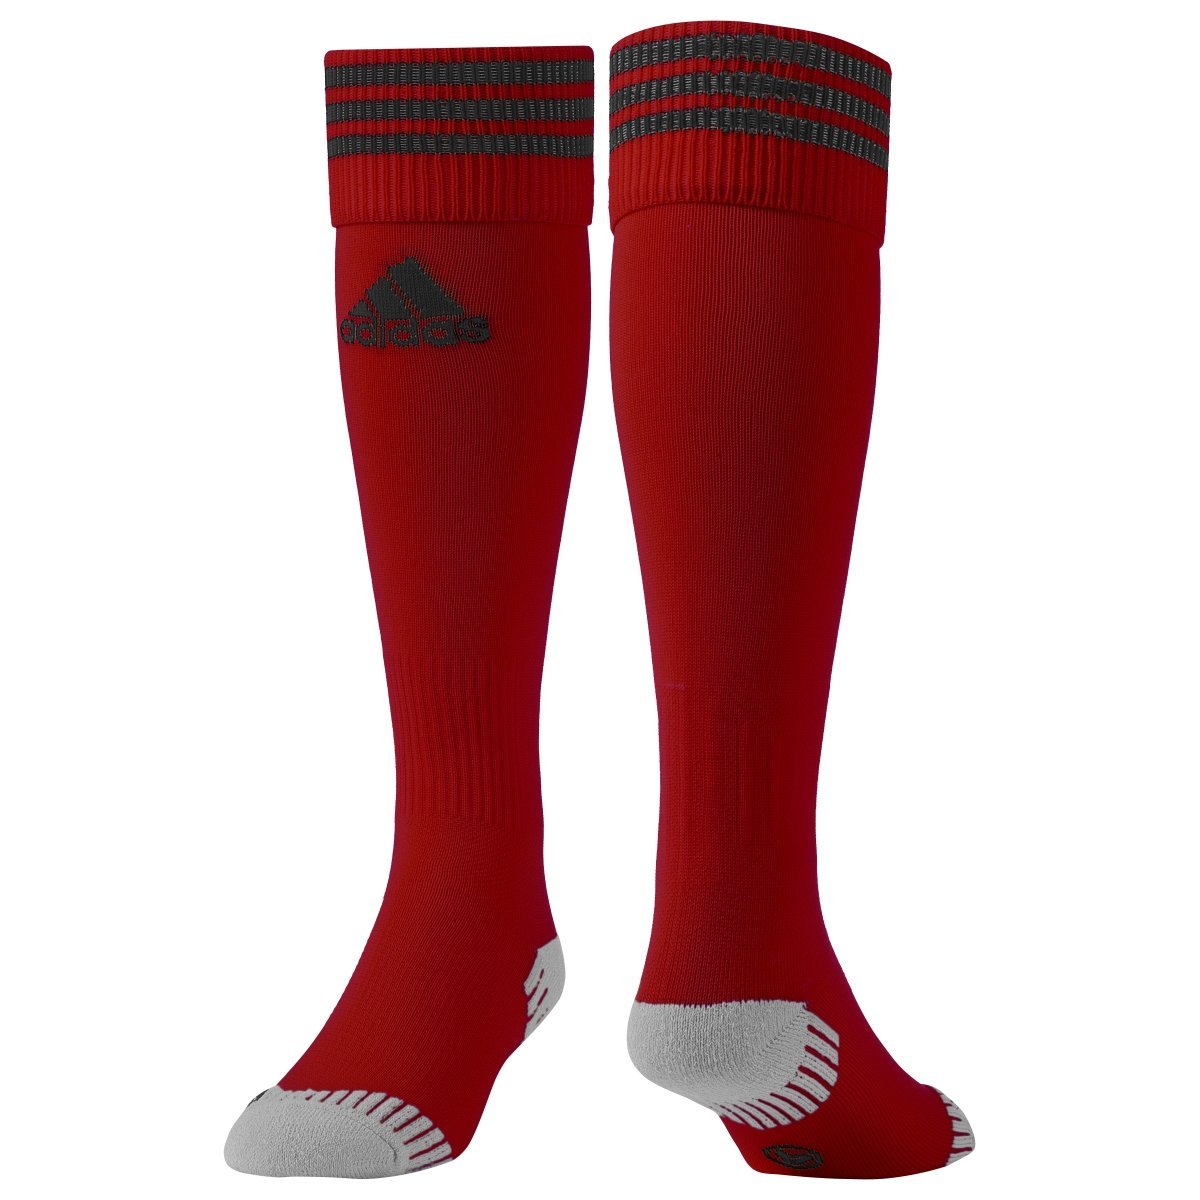 Football socks adidas ADISOCK 12